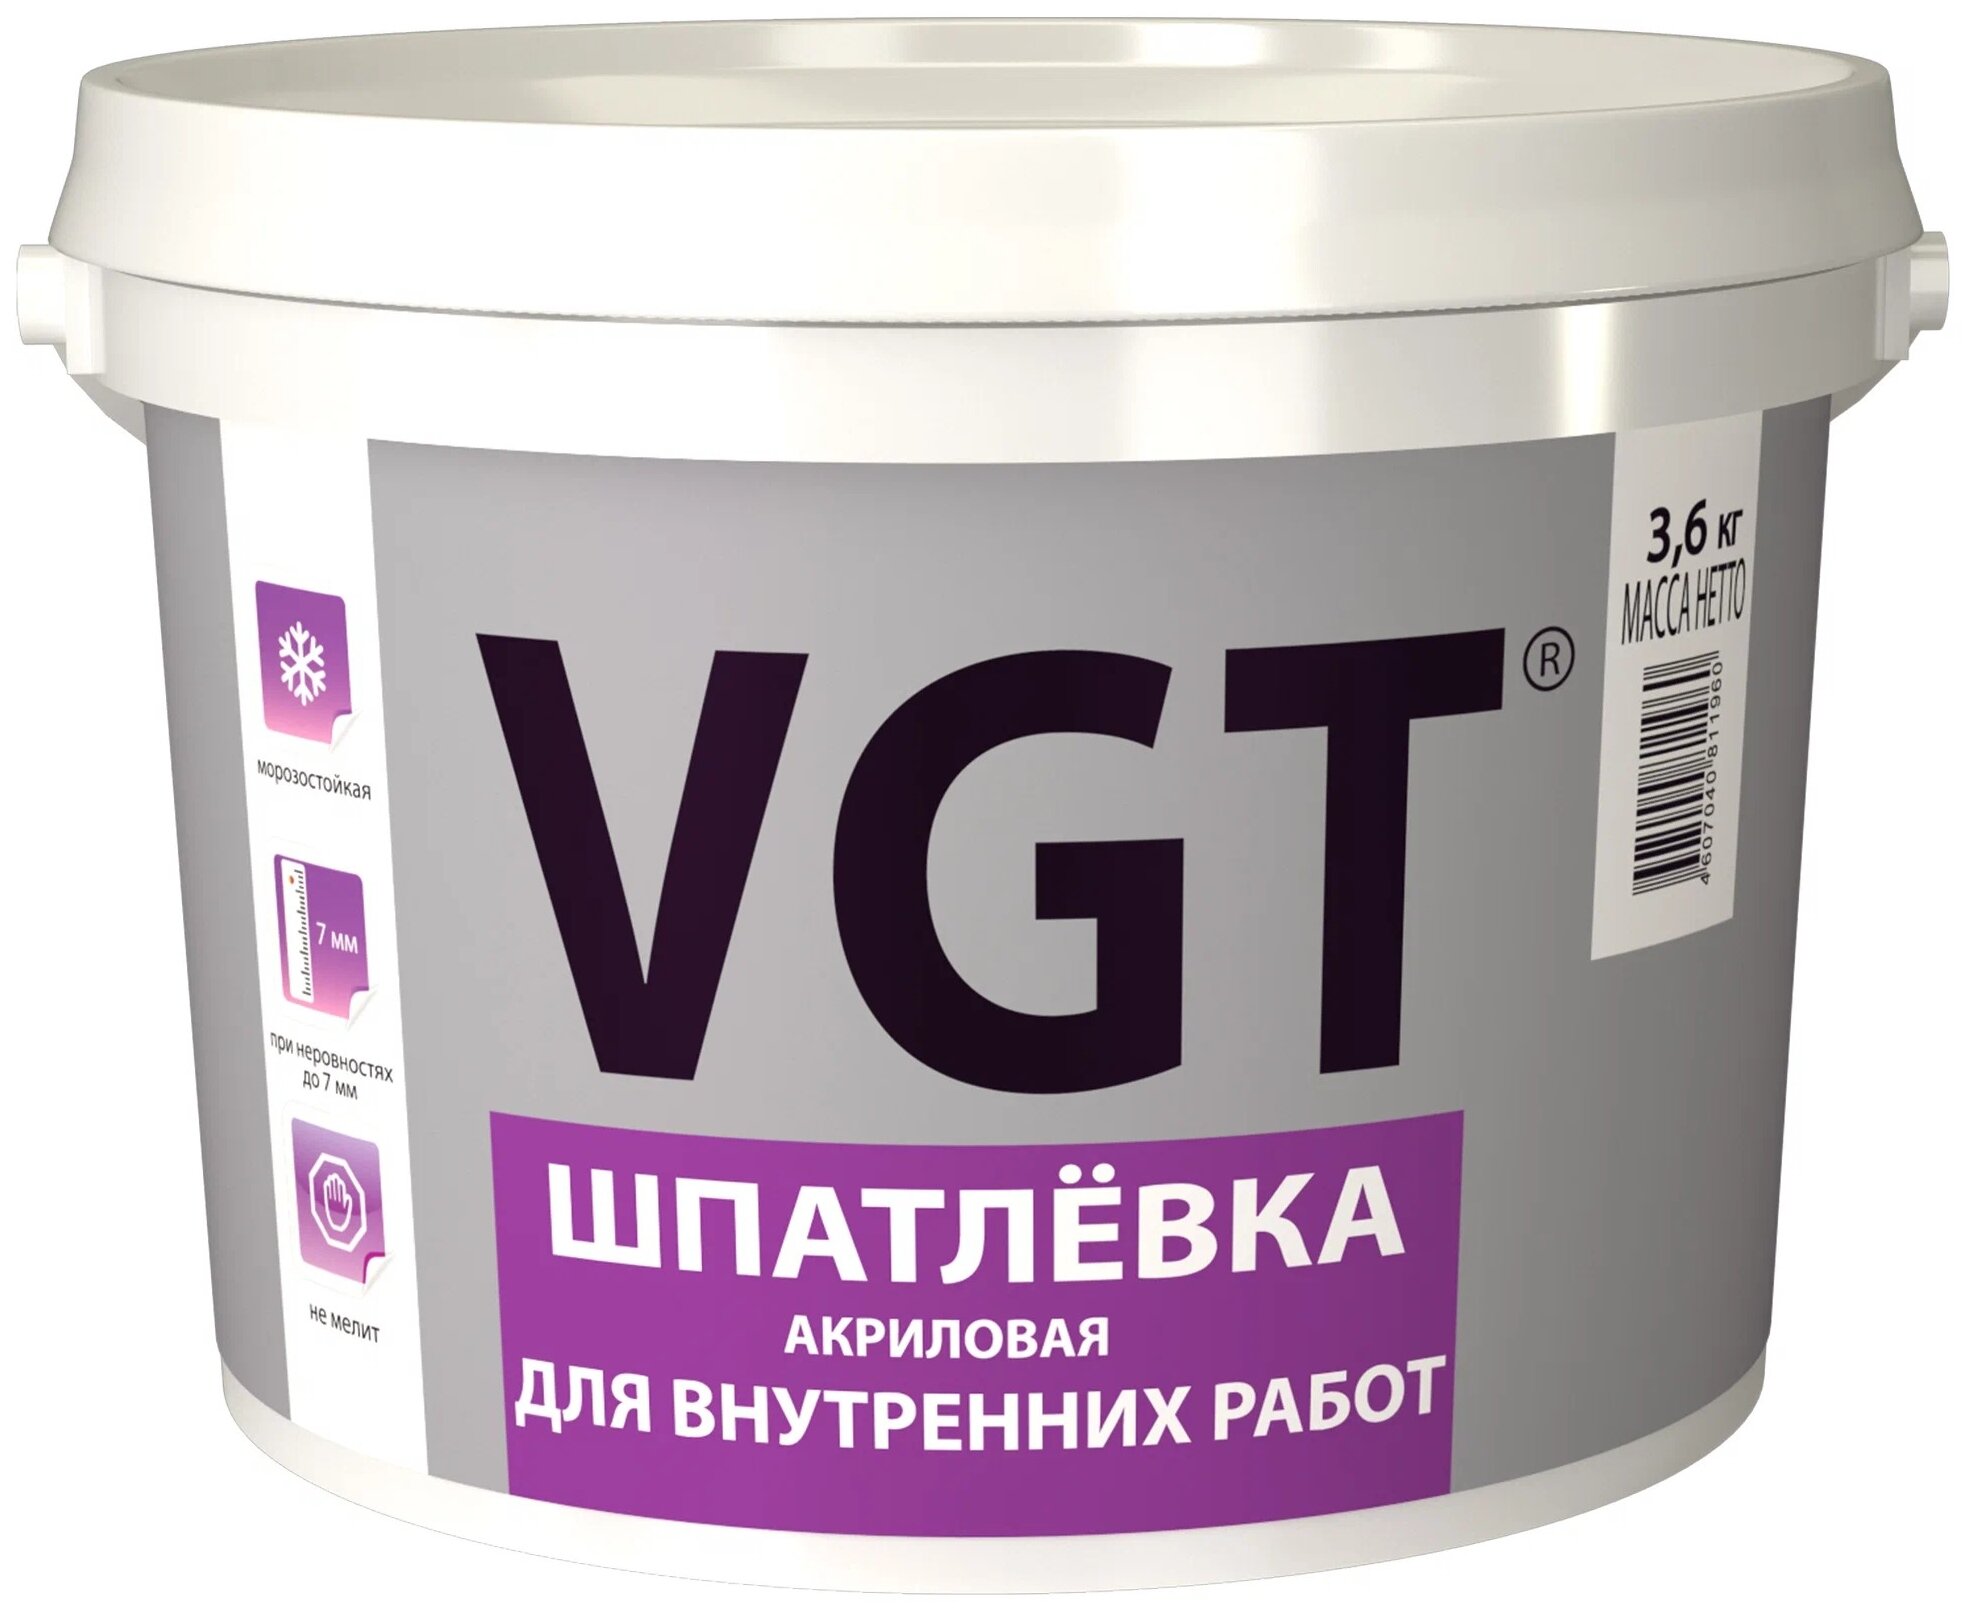 Шпатлевка VGT для внутренних работ 3.6 кг